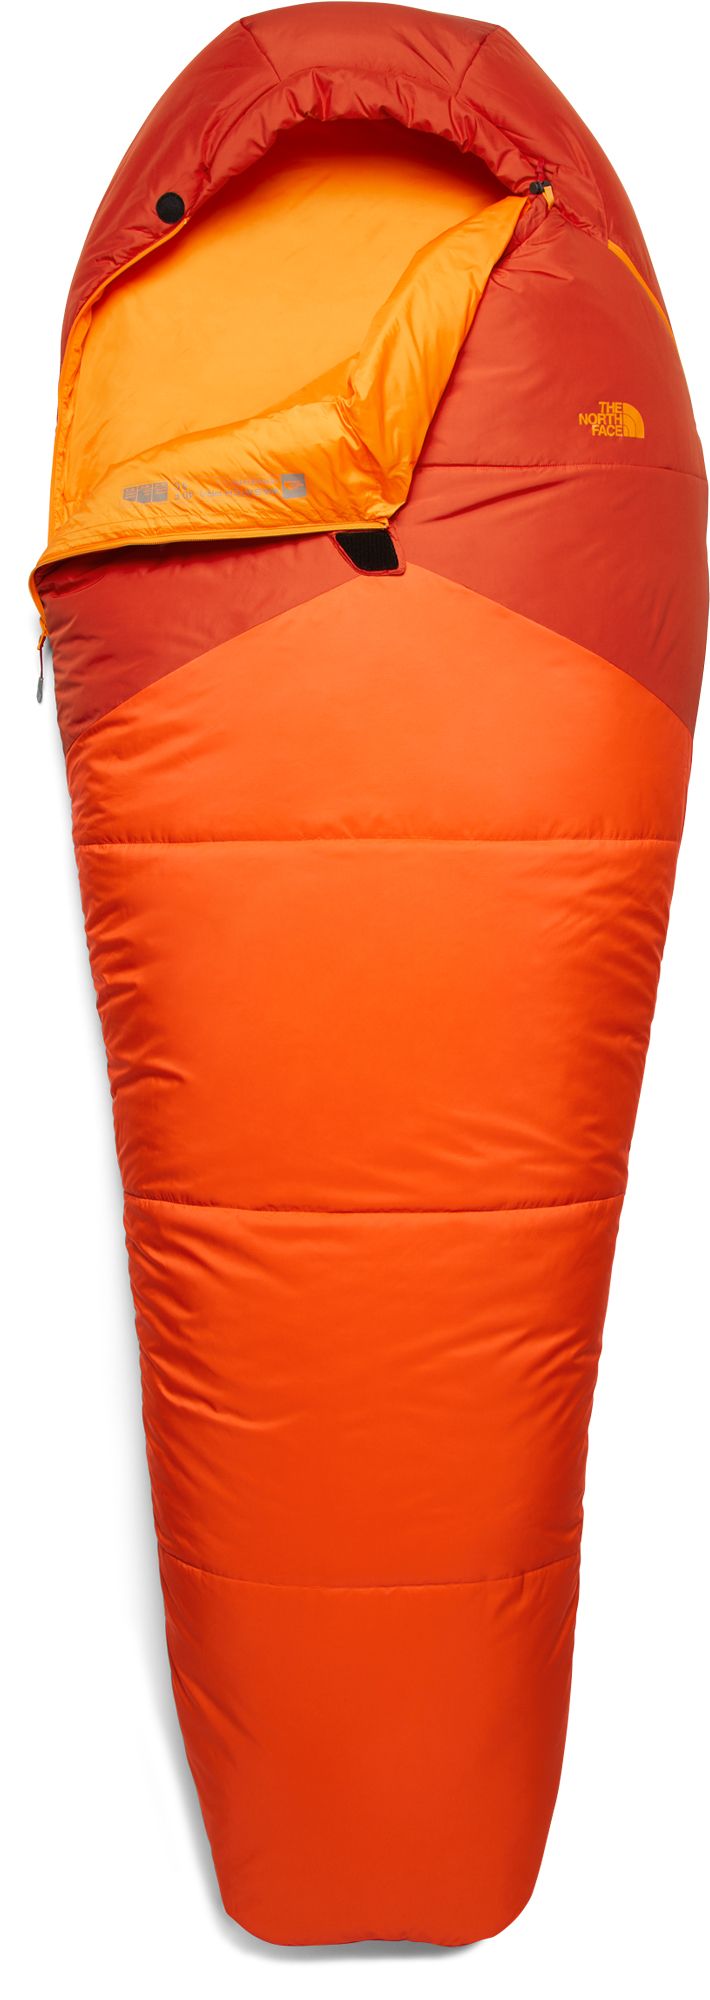 wasatch 40 sleeping bag